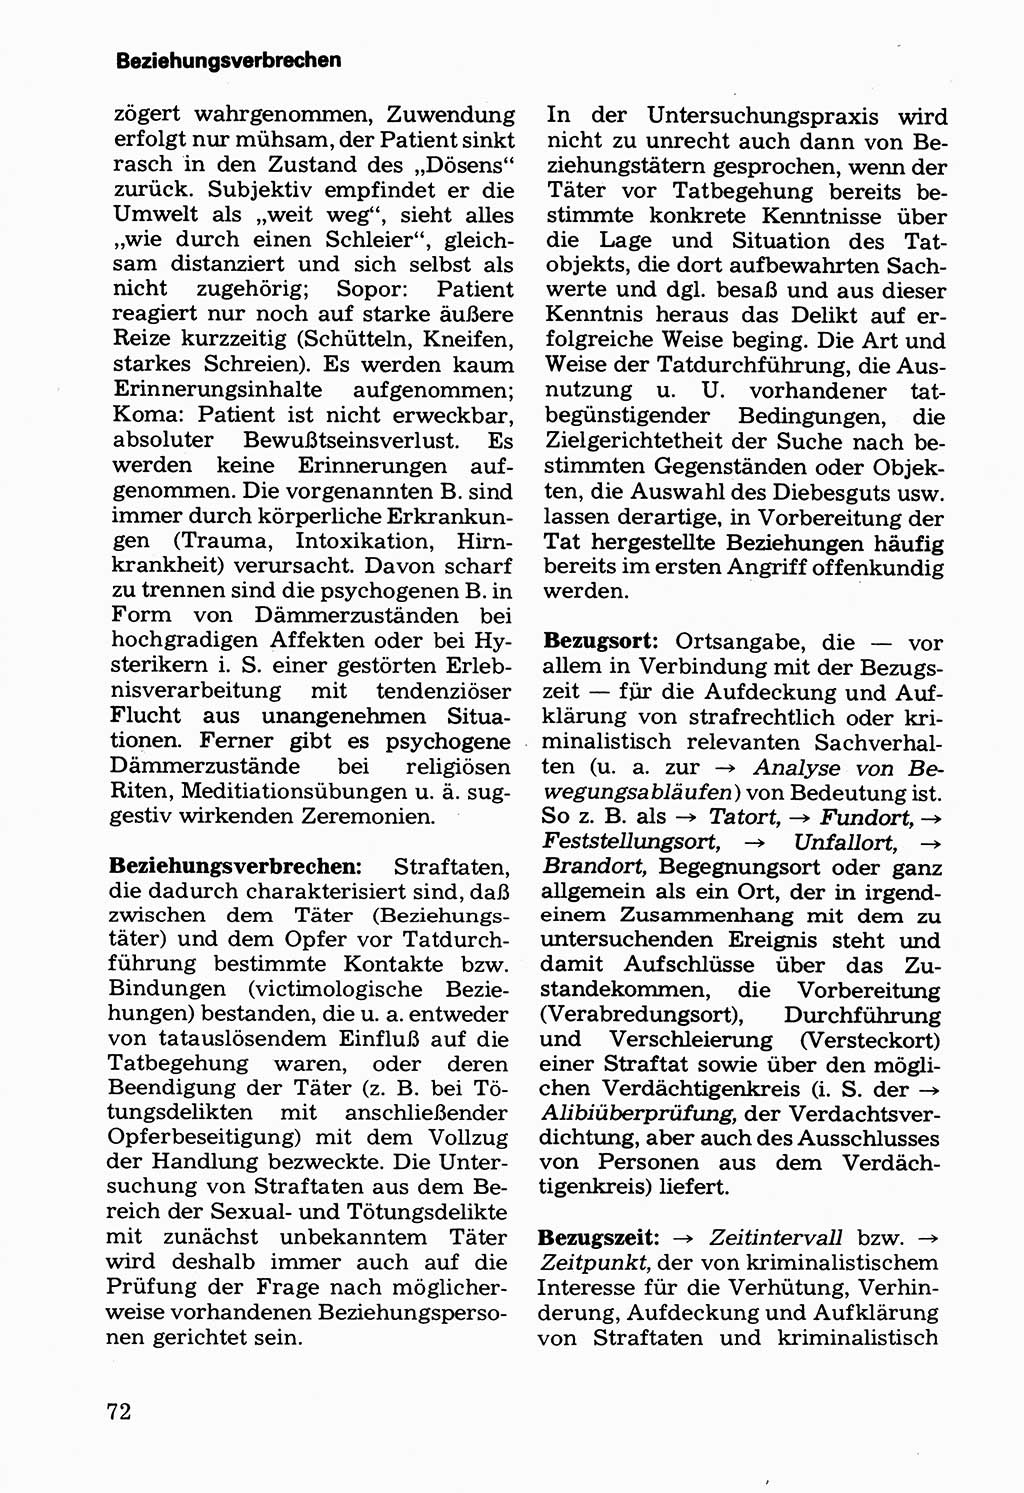 Wörterbuch der sozialistischen Kriminalistik [Deutsche Demokratische Republik (DDR)] 1981, Seite 72 (Wb. soz. Krim. DDR 1981, S. 72)